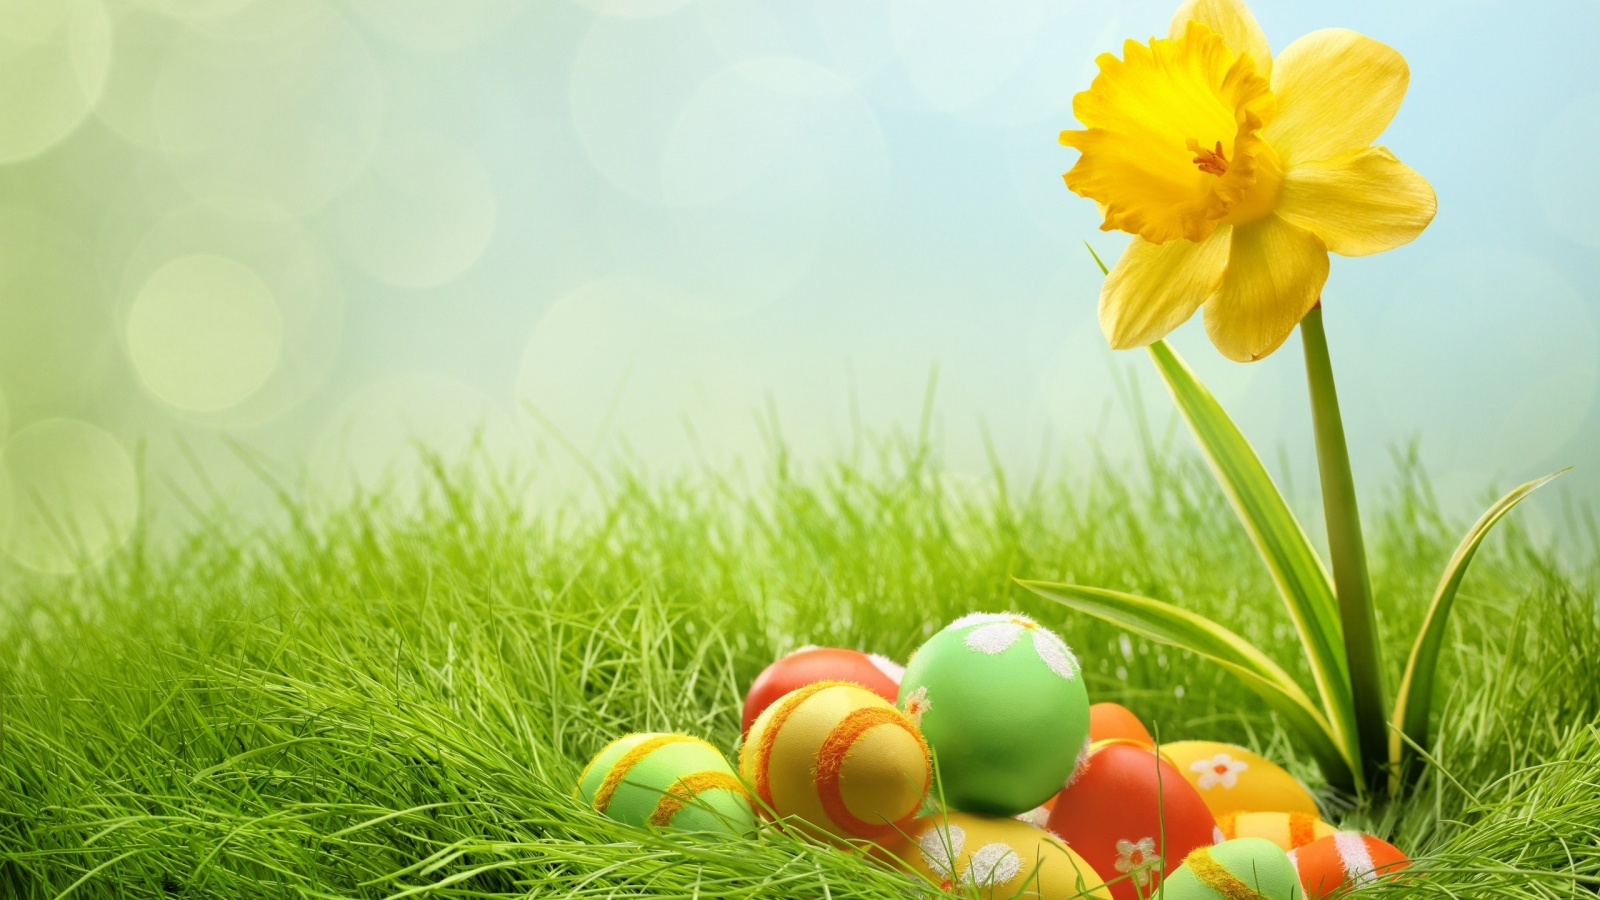 2014 Easter Eggs for 1600 x 900 HDTV resolution